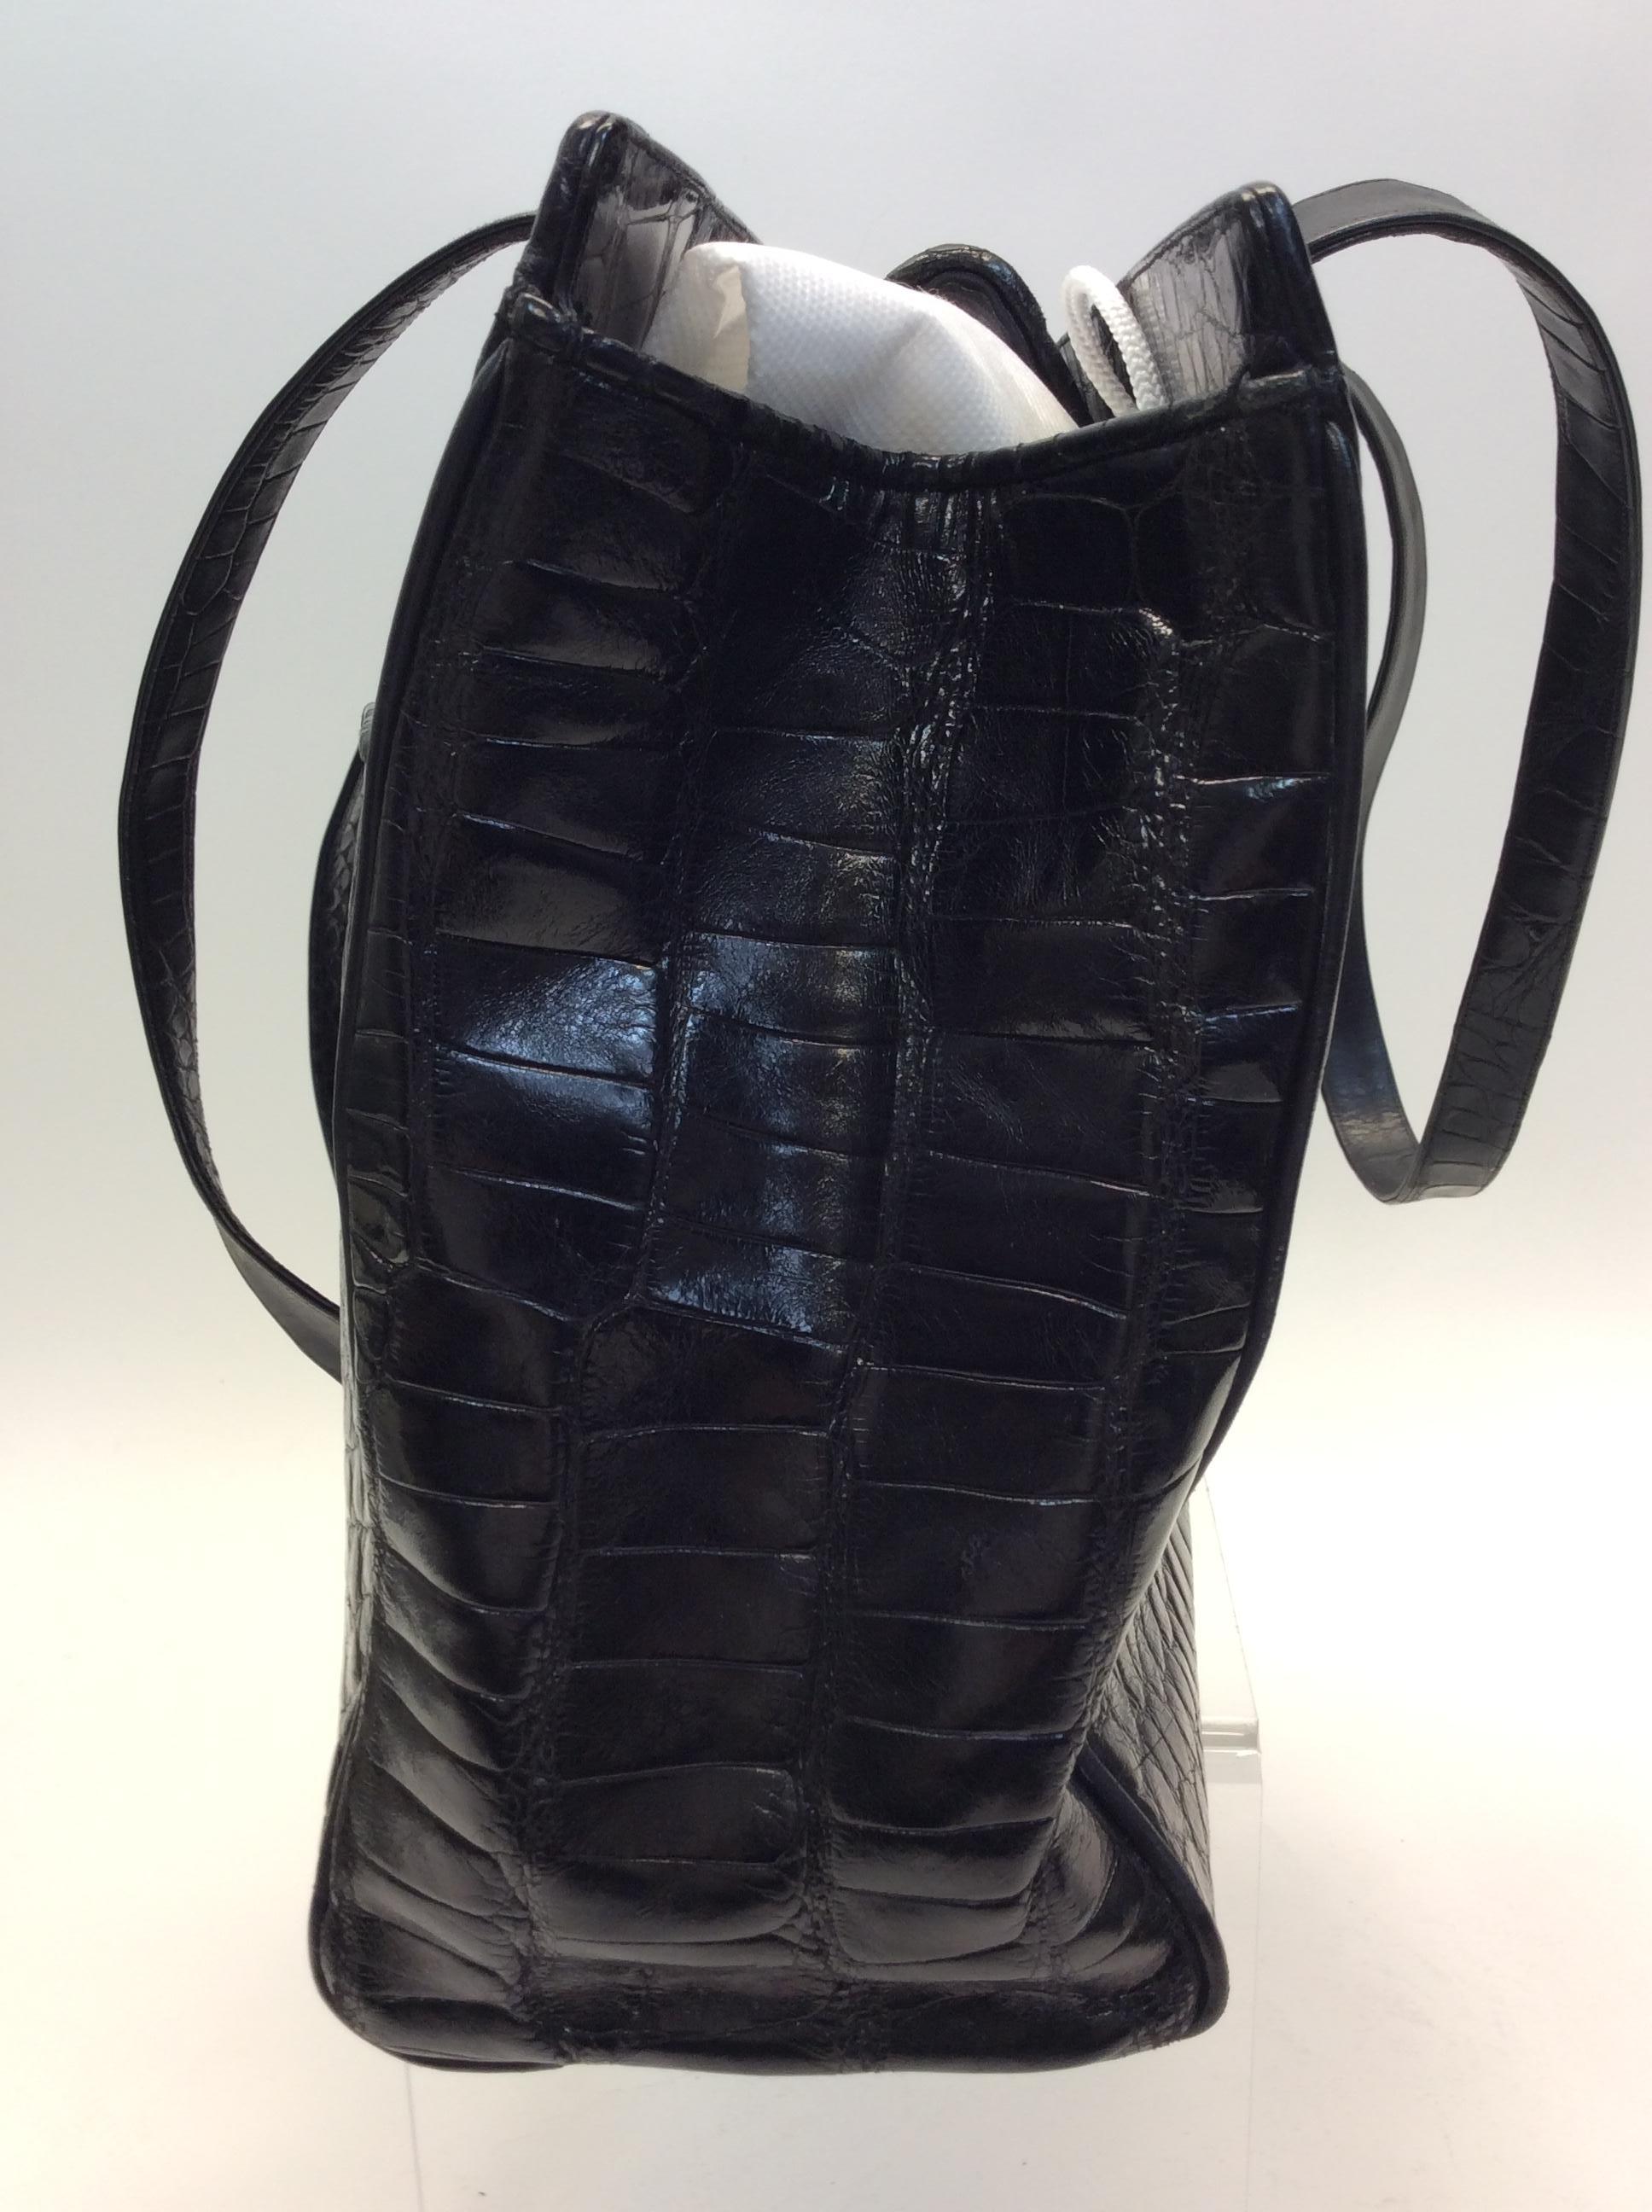 Judith Leiber Black Crocodile Shoulder Bag
$999
15